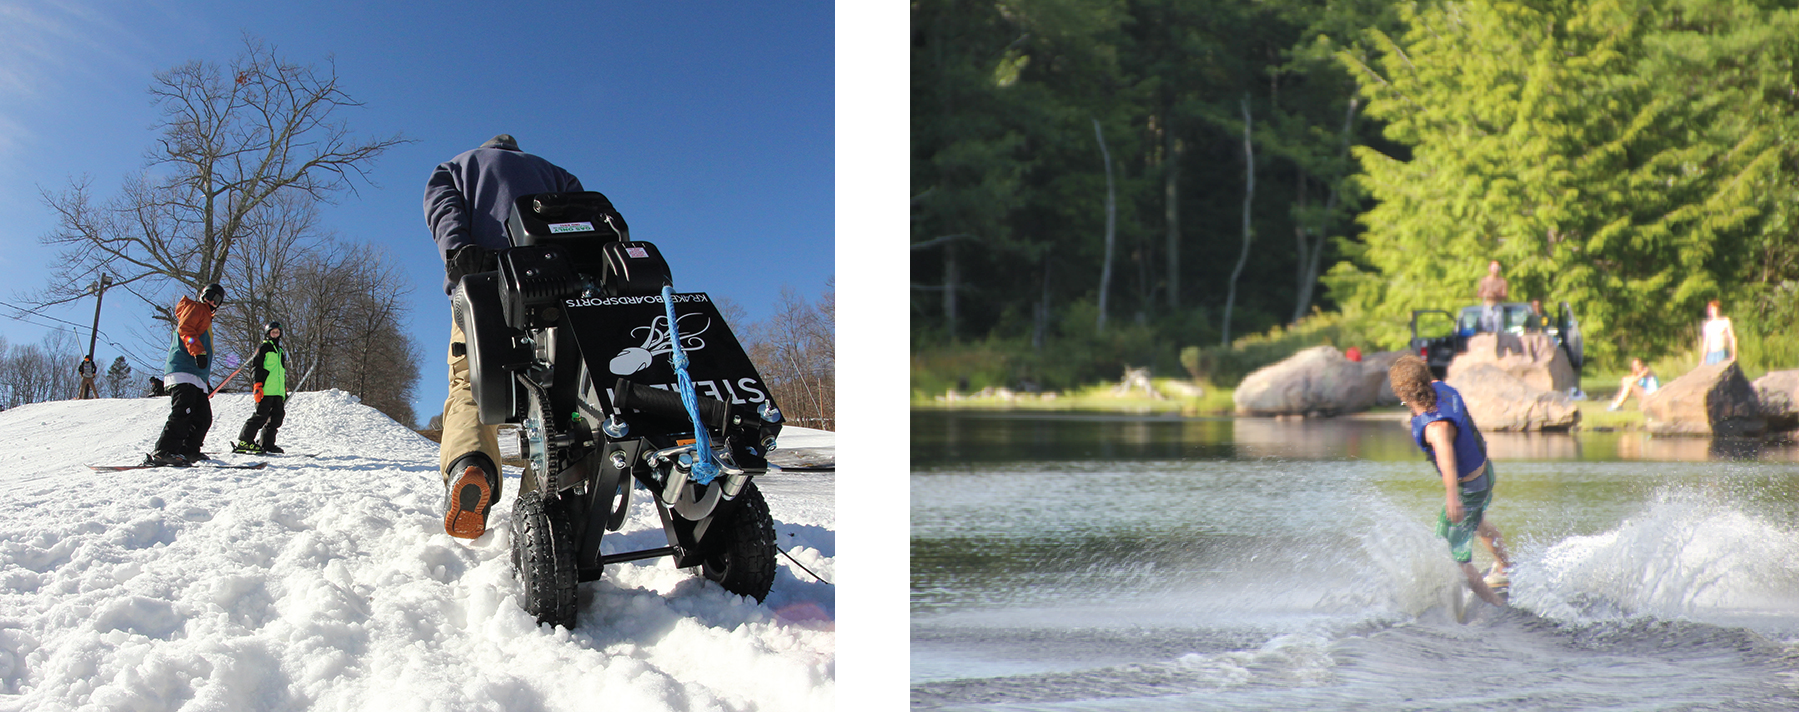 Uma fotografia mostra uma pessoa subindo uma colina coberta de neve carregando um guincho sobre rodas. Uma fotografia mostra uma pessoa esquiando em um lago.